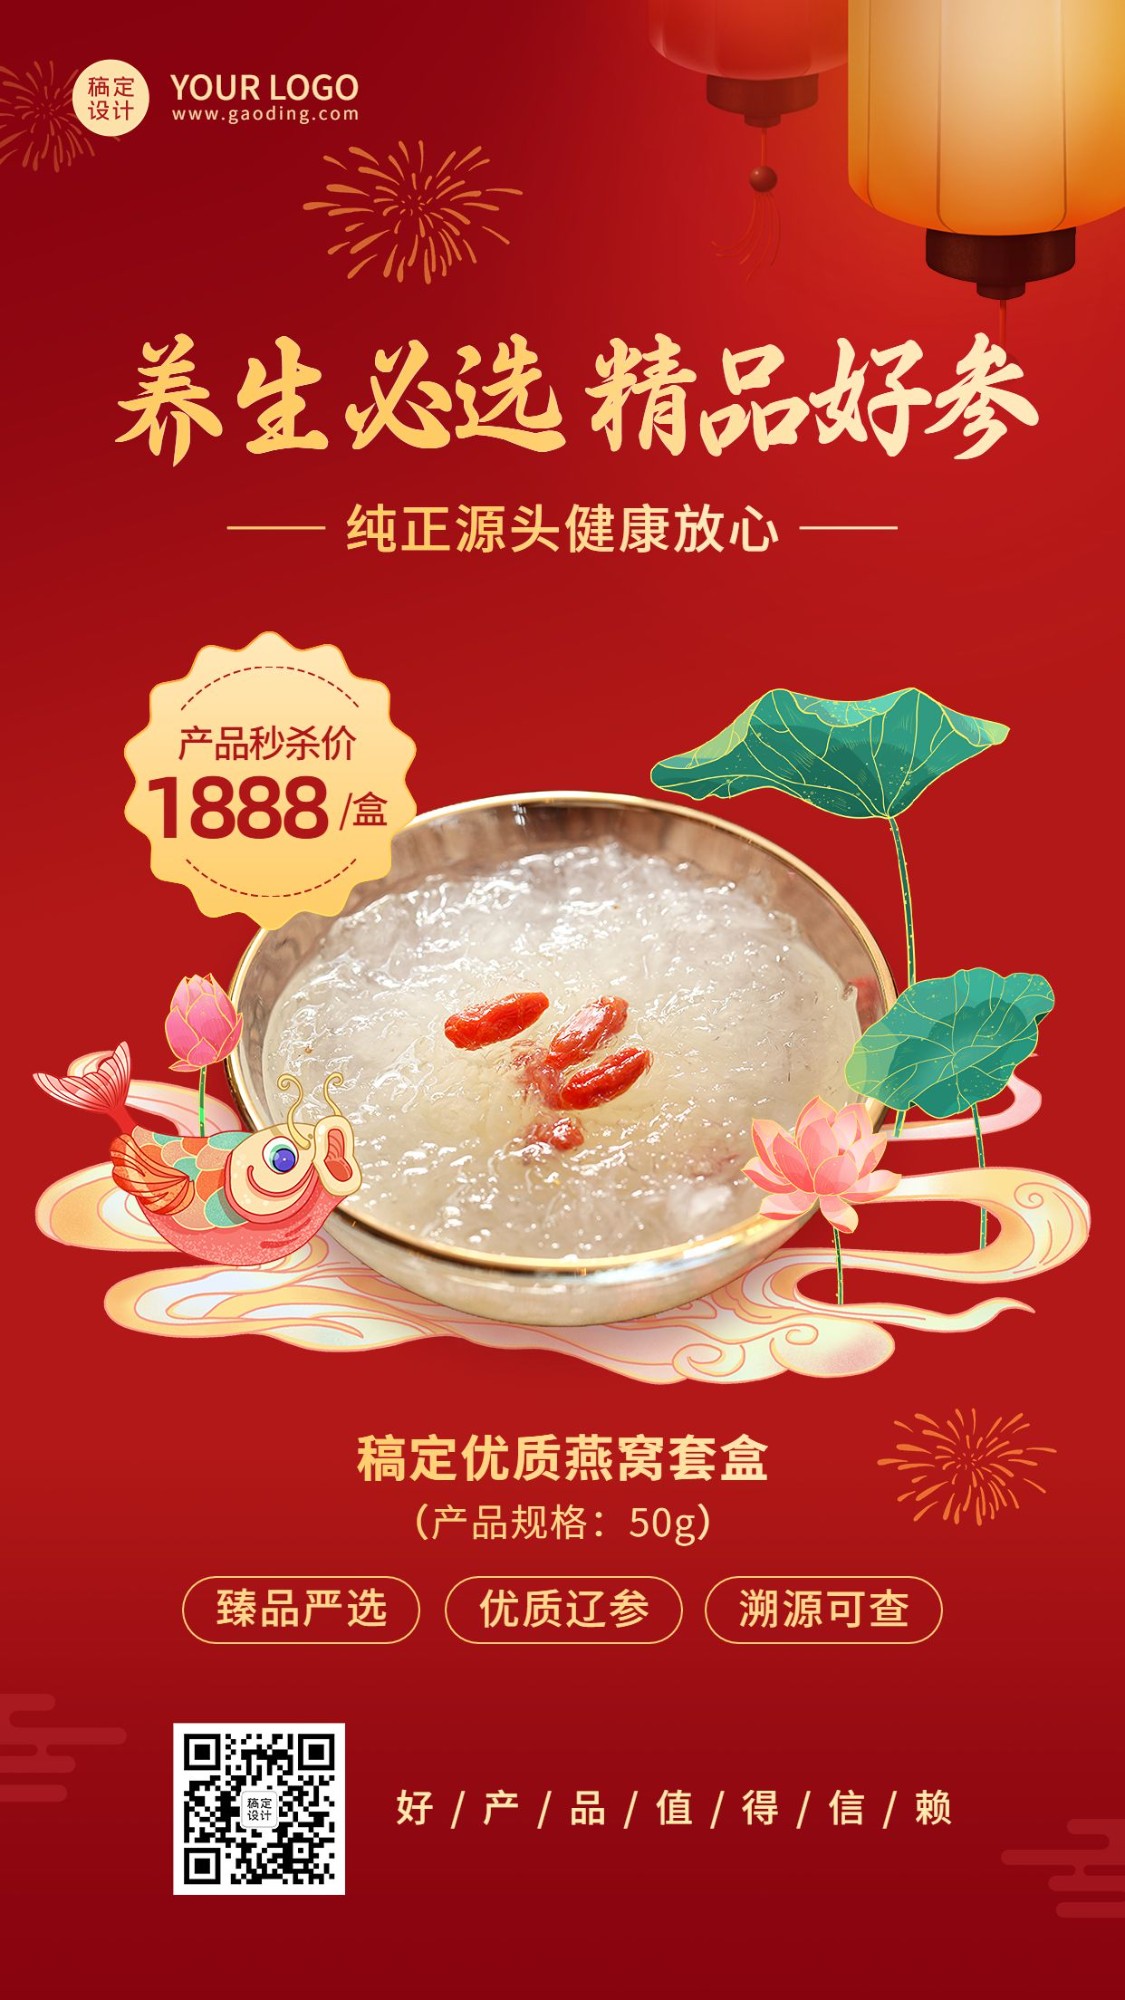 养生保健燕窝产品营销展示中国风手机海报